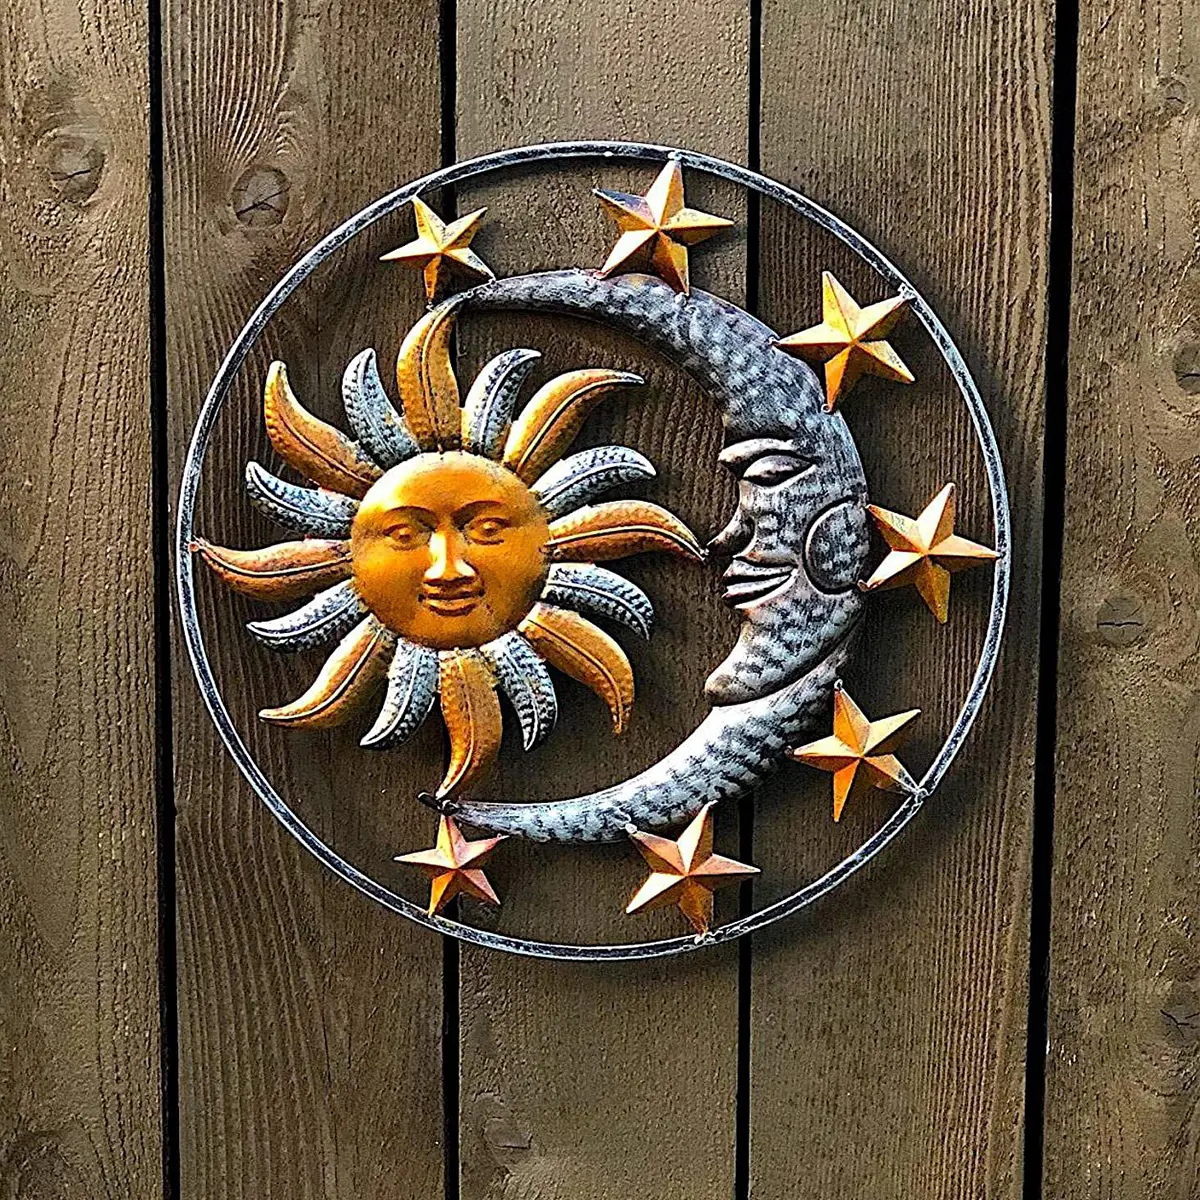 Escultura artística colgante de Metal para pared, escultura artesanal de sol, luna, estrellas, decoración para el hogar, jardín, interior y exterior